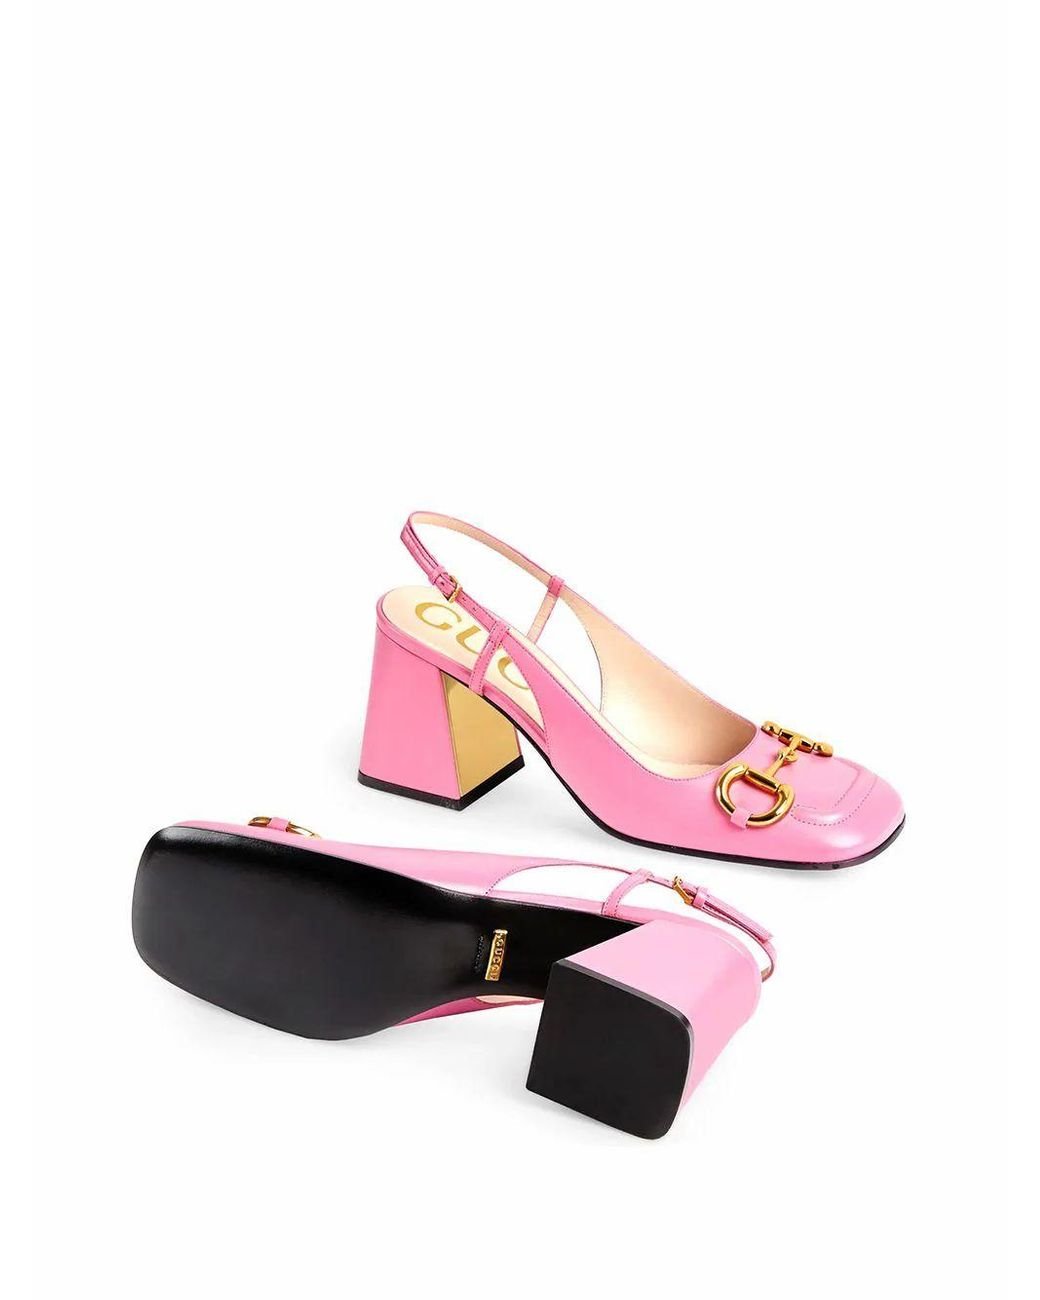 Gucci Horsebit Mid-heel Slingback Pumps in Pink | Lyst